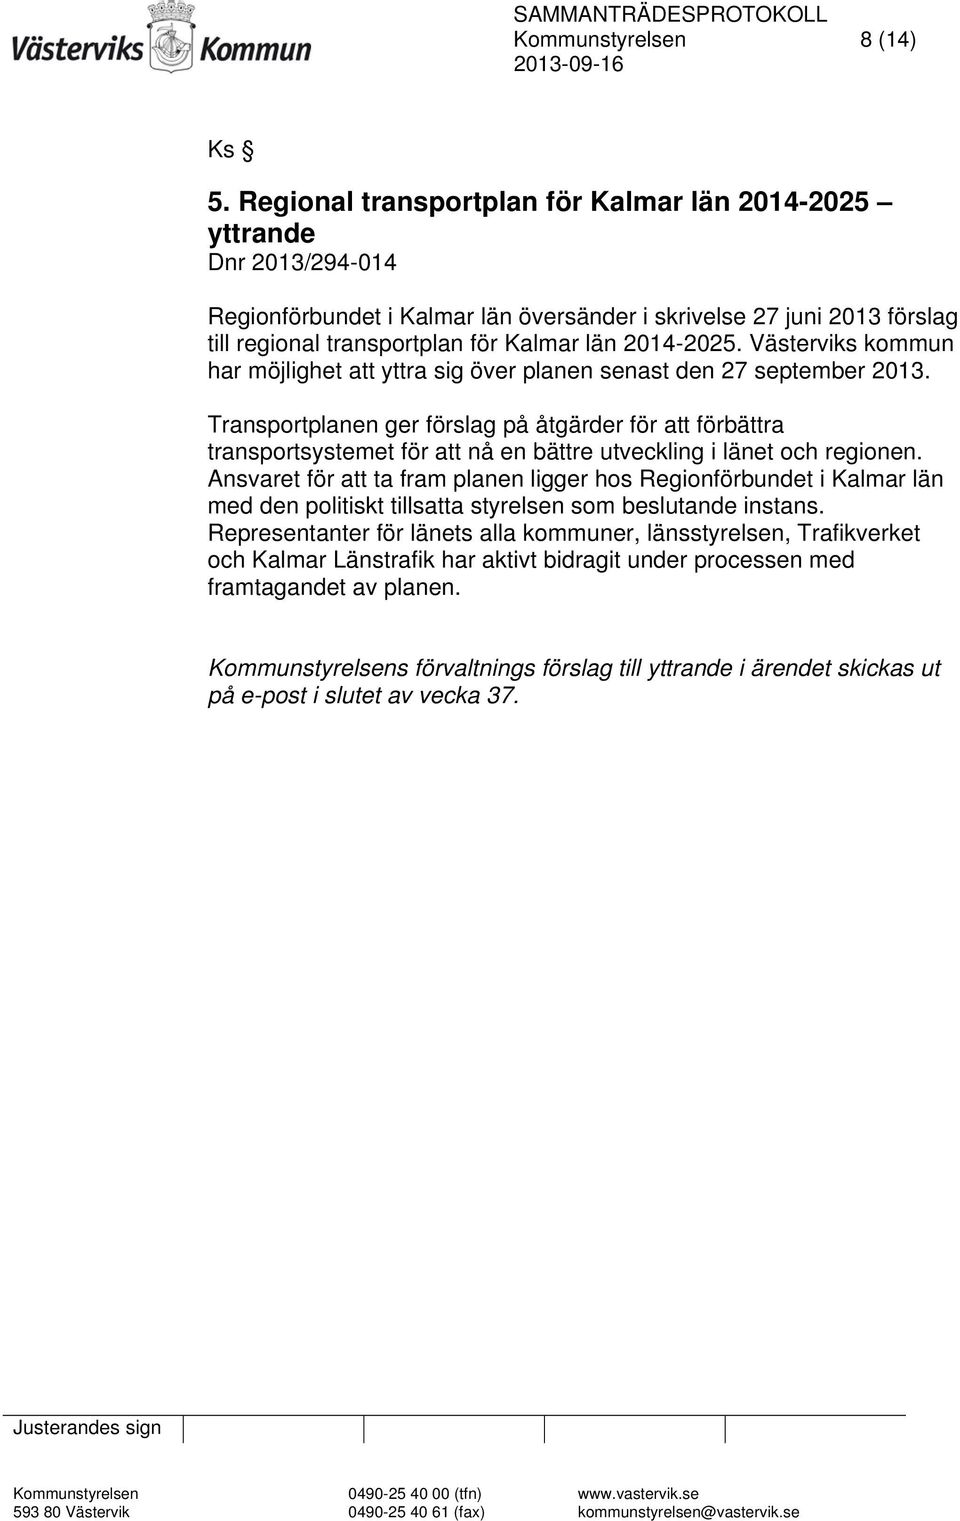 Västerviks kommun har möjlighet att yttra sig över planen senast den 27 september 2013.